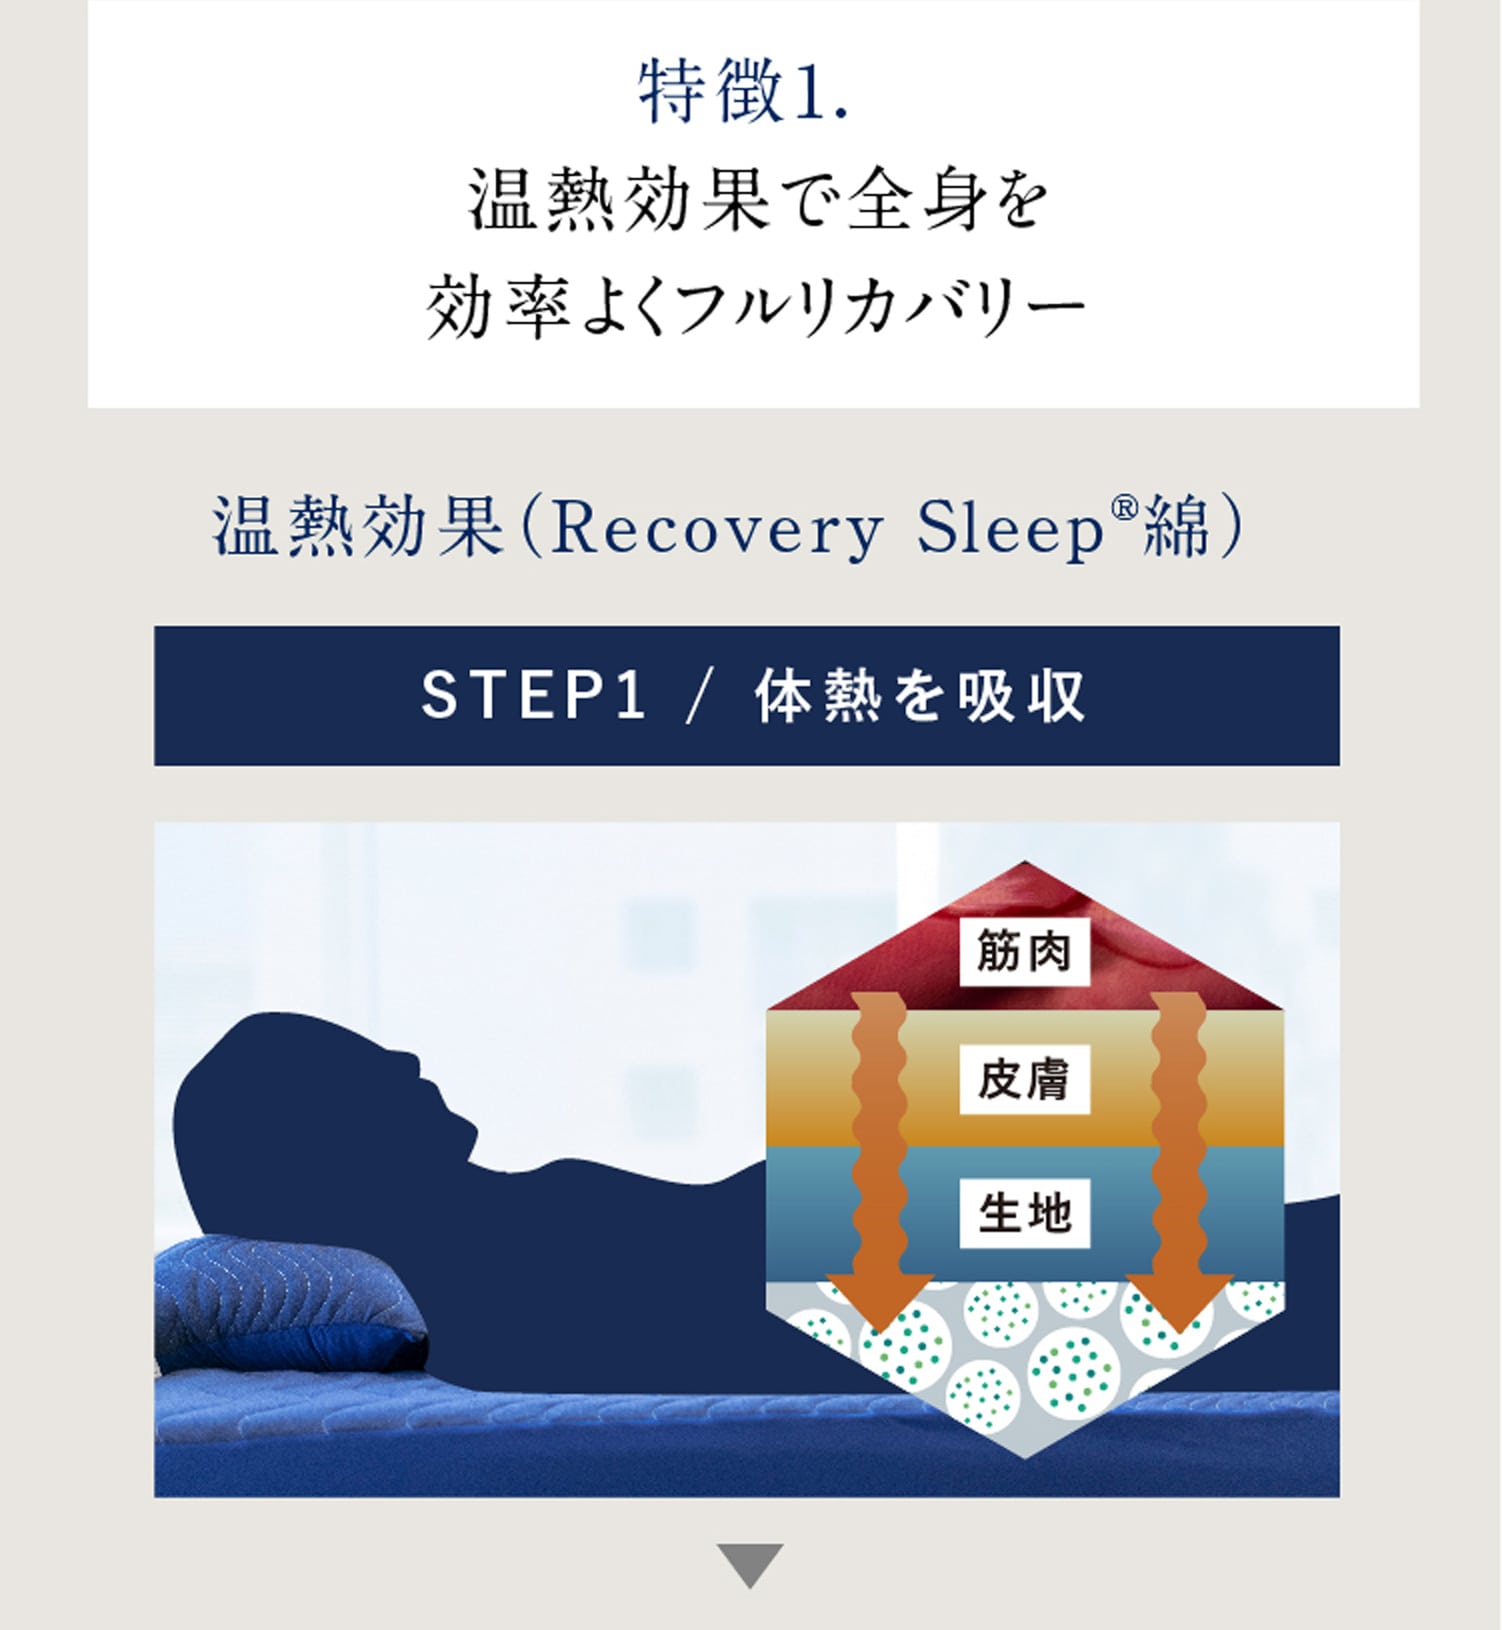 特徴1. 温熱効果で全身を効率よくフルリカバリー 温熱効果（Recovery Sleep®綿）STEP1 / 体熱を吸収